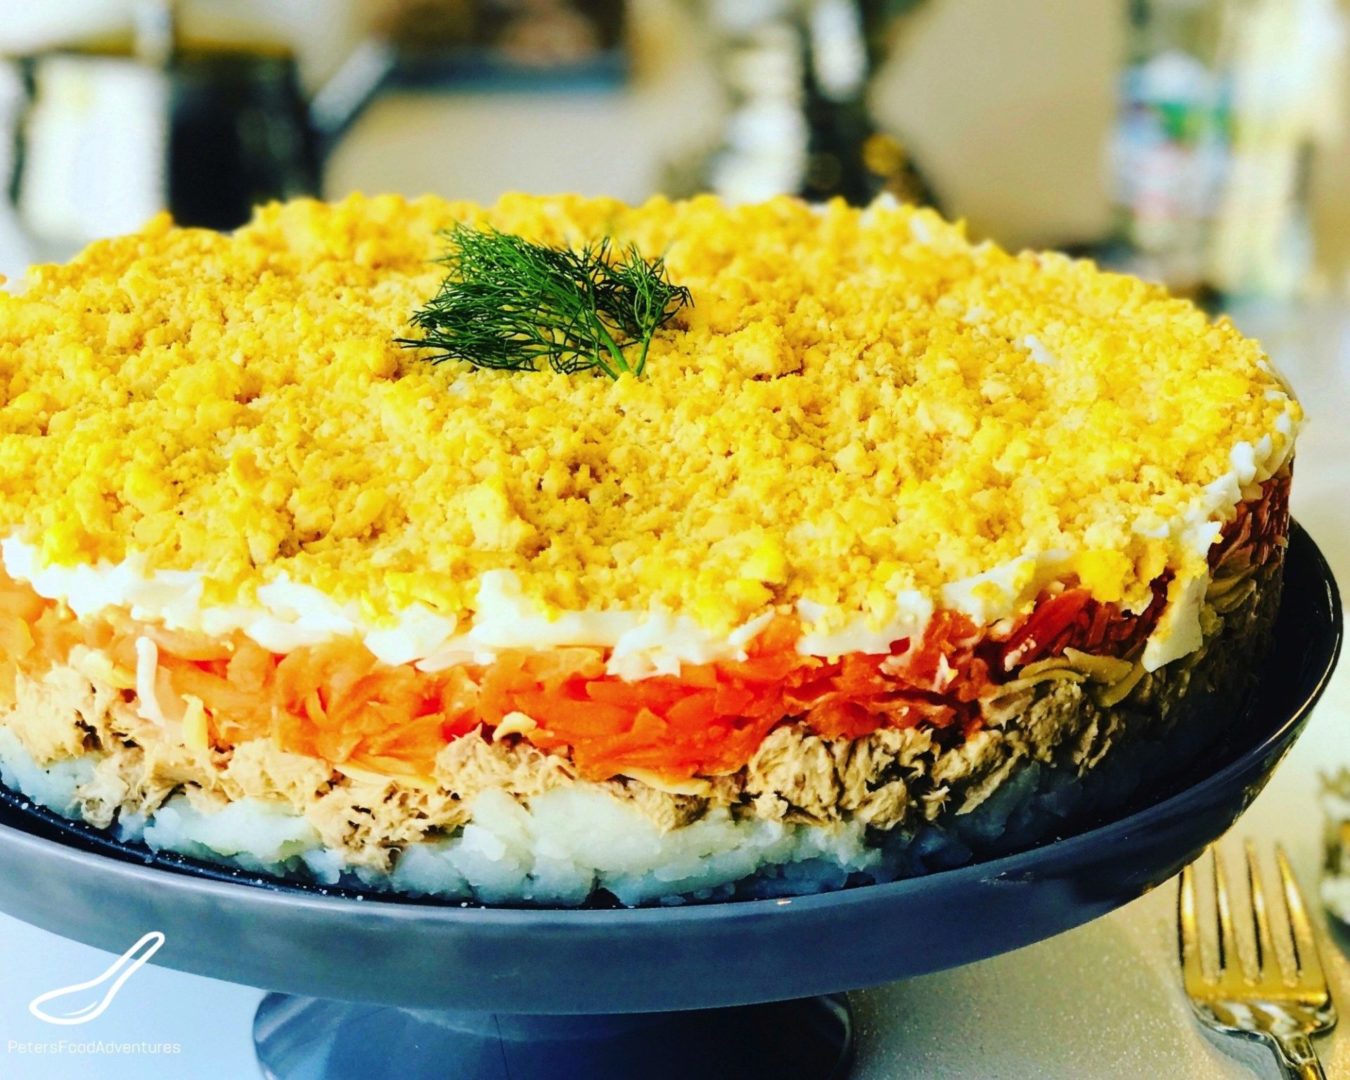 Праздничный салат “Мимоза”: шикарный на вид и восхитительный на вкус – обязательно приготовьте на праздник!